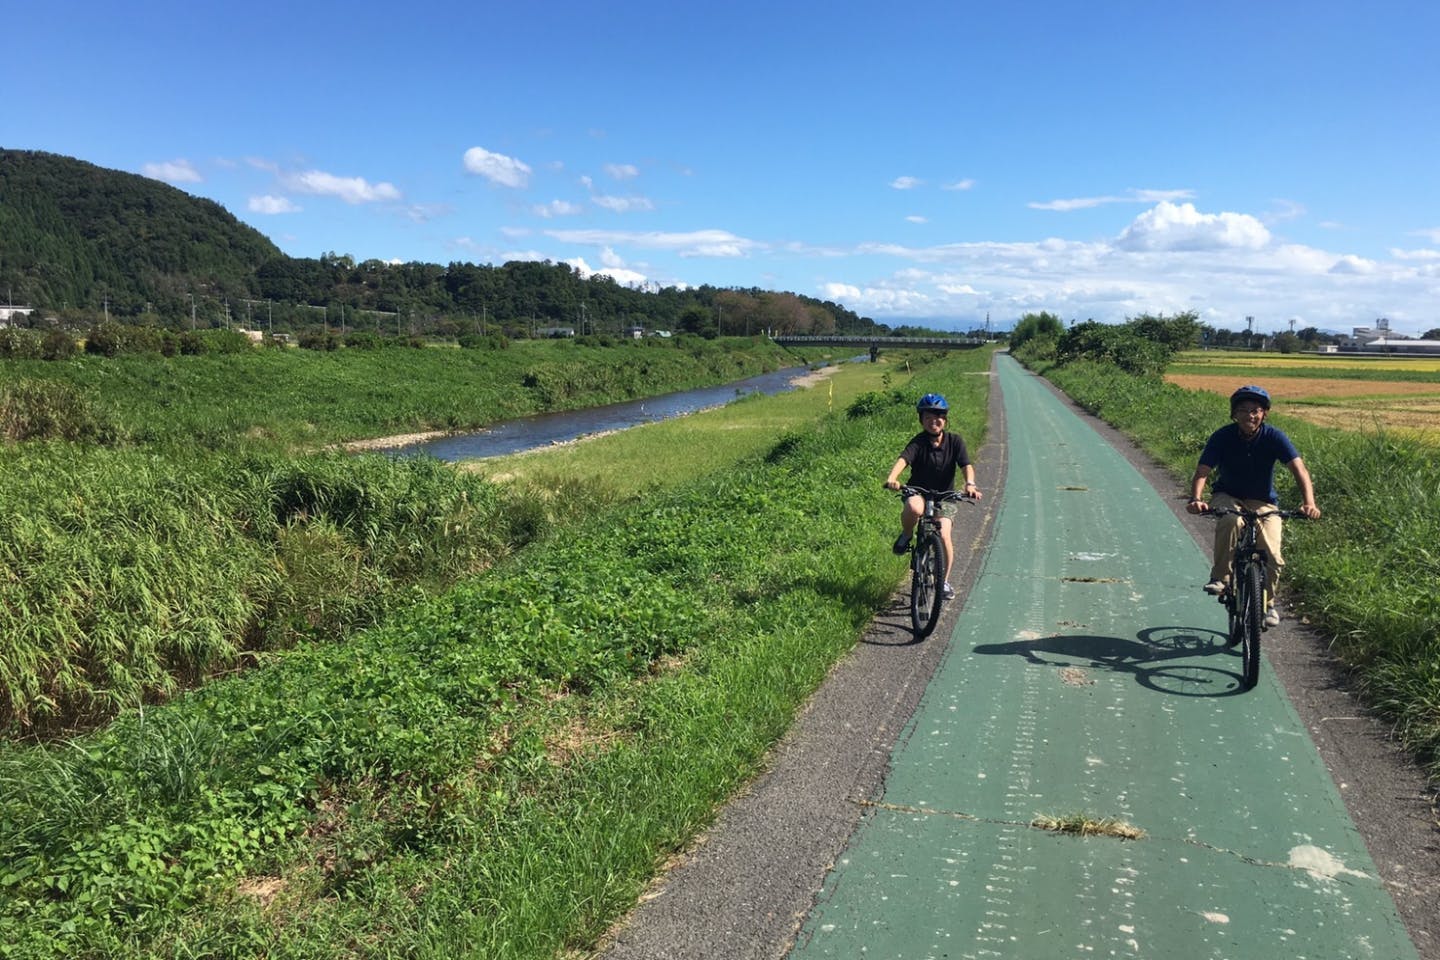 【滋賀・琵琶湖・サイクリング】マウンテンバイクで快走。奥びわ湖の絶景を満喫しよう